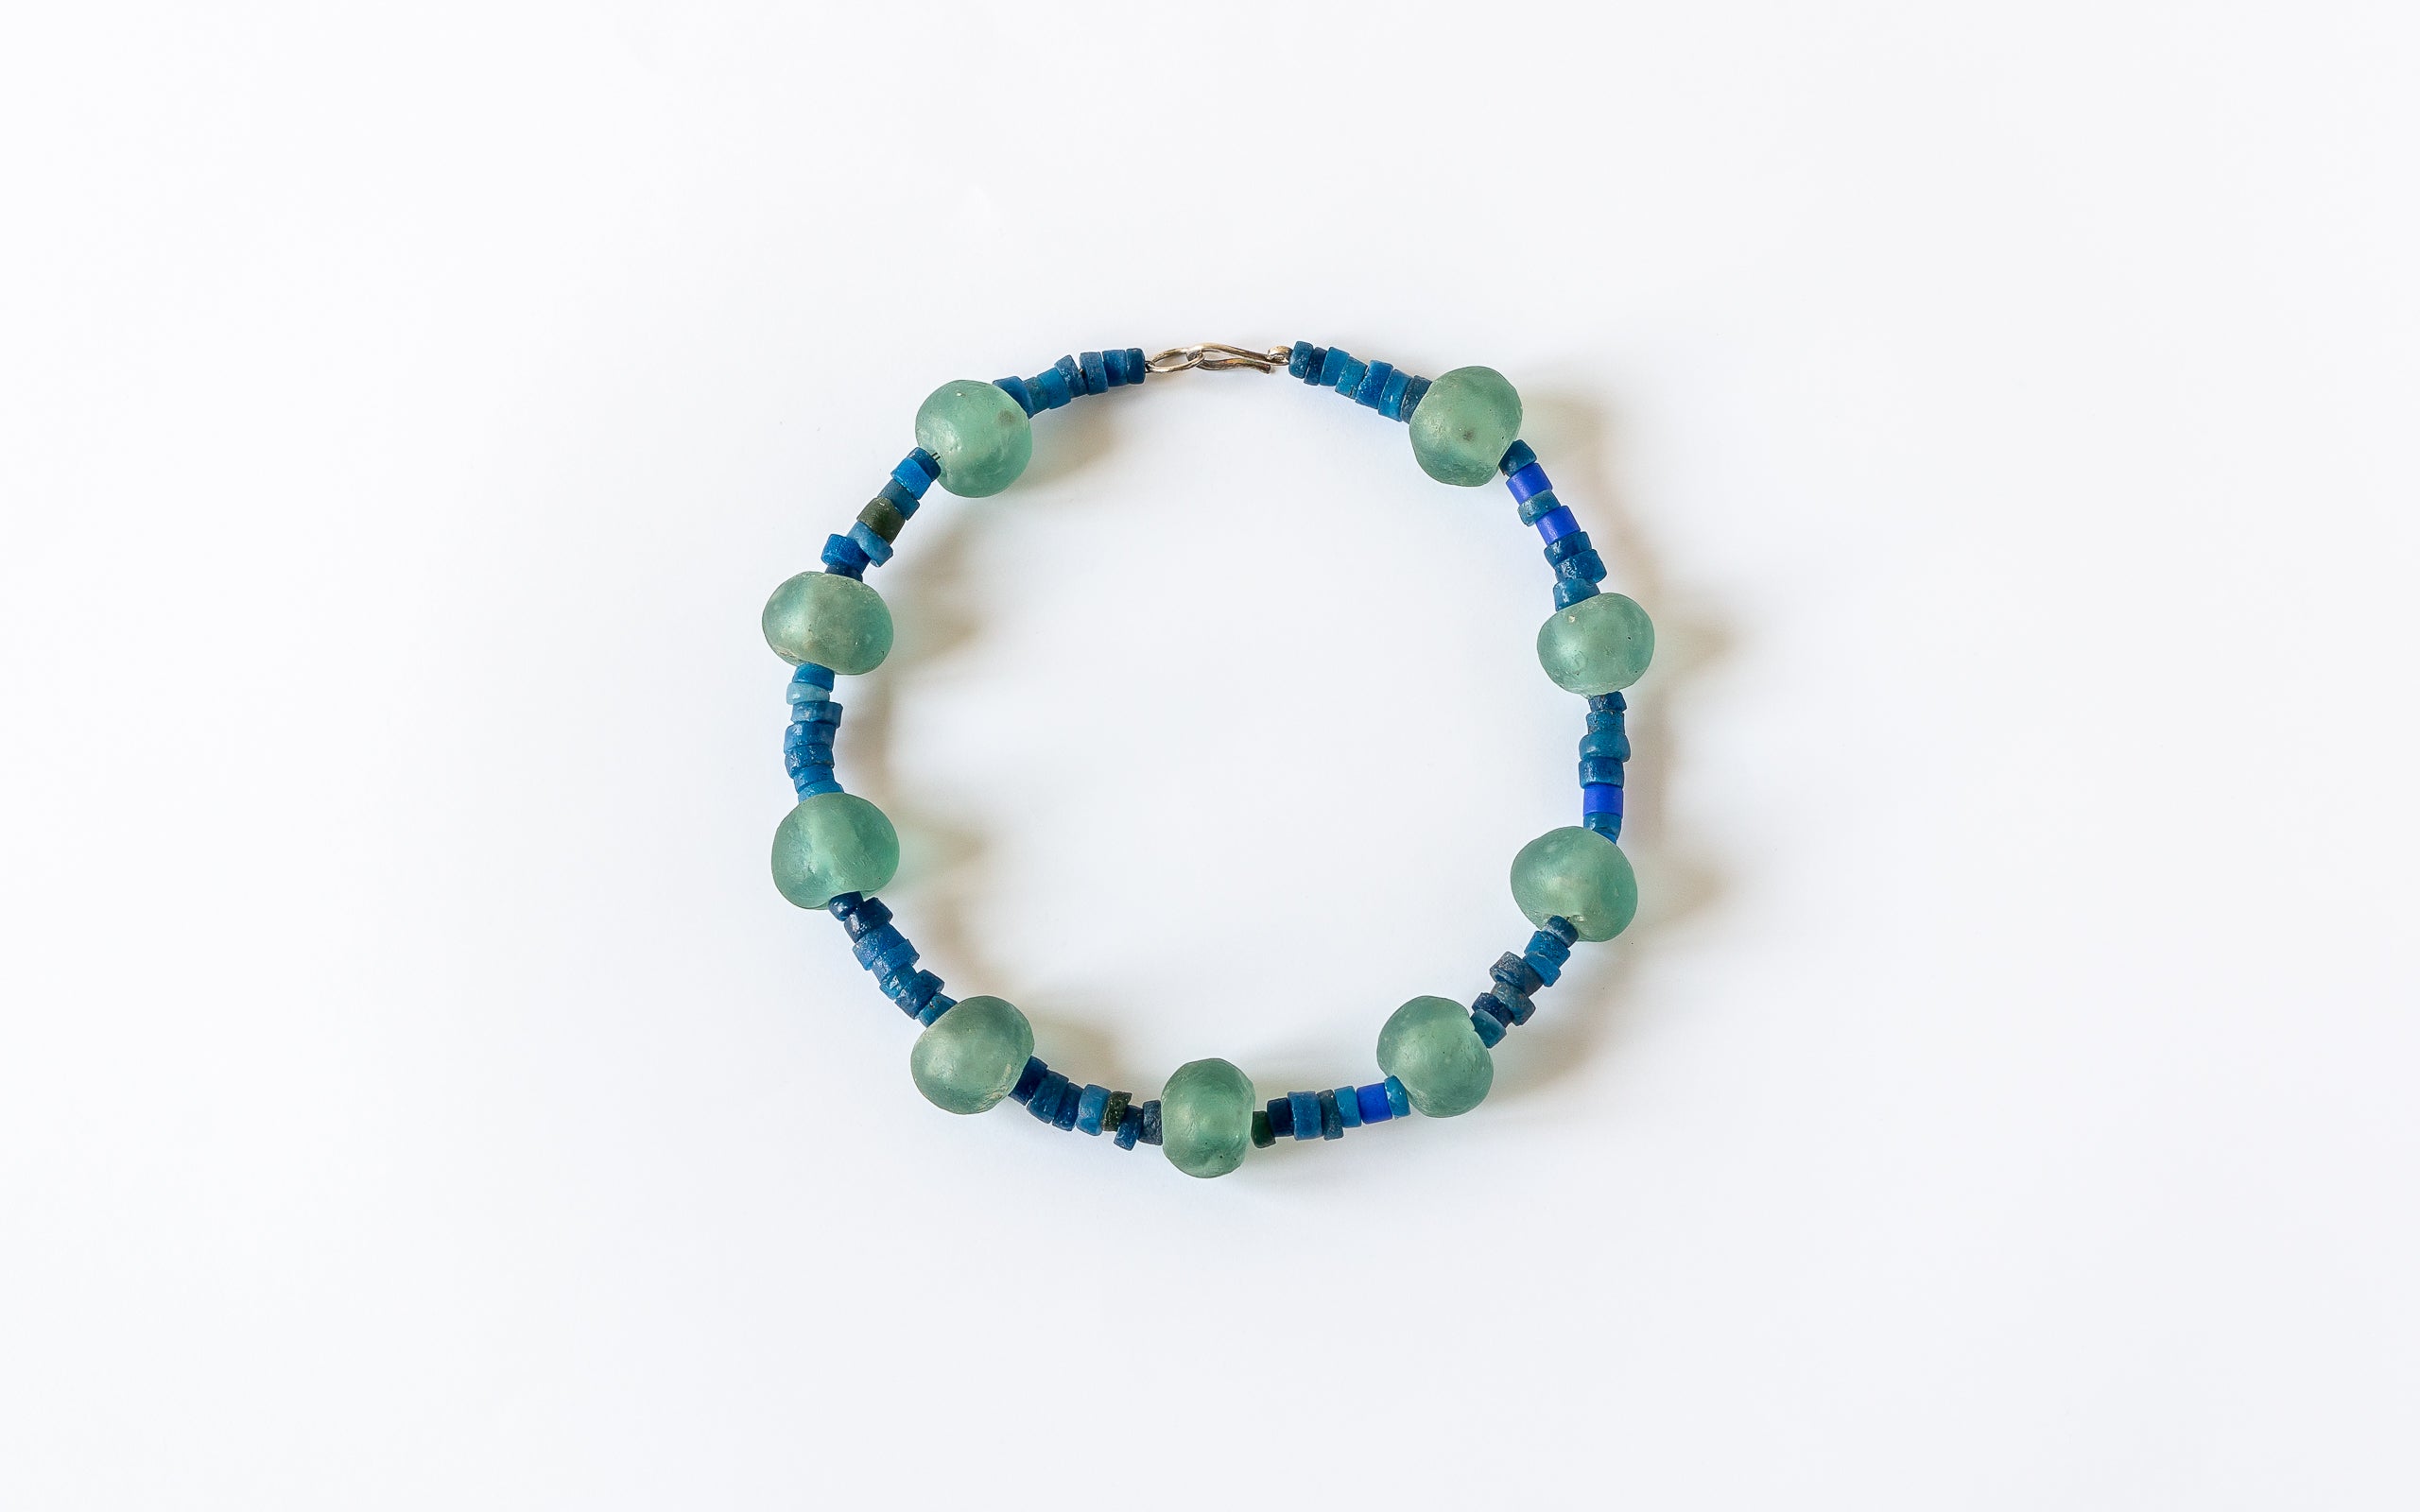 Halskette aus grossen blaugrünen Glasflusskugeln mit blauen Glasperlen kombiniert.